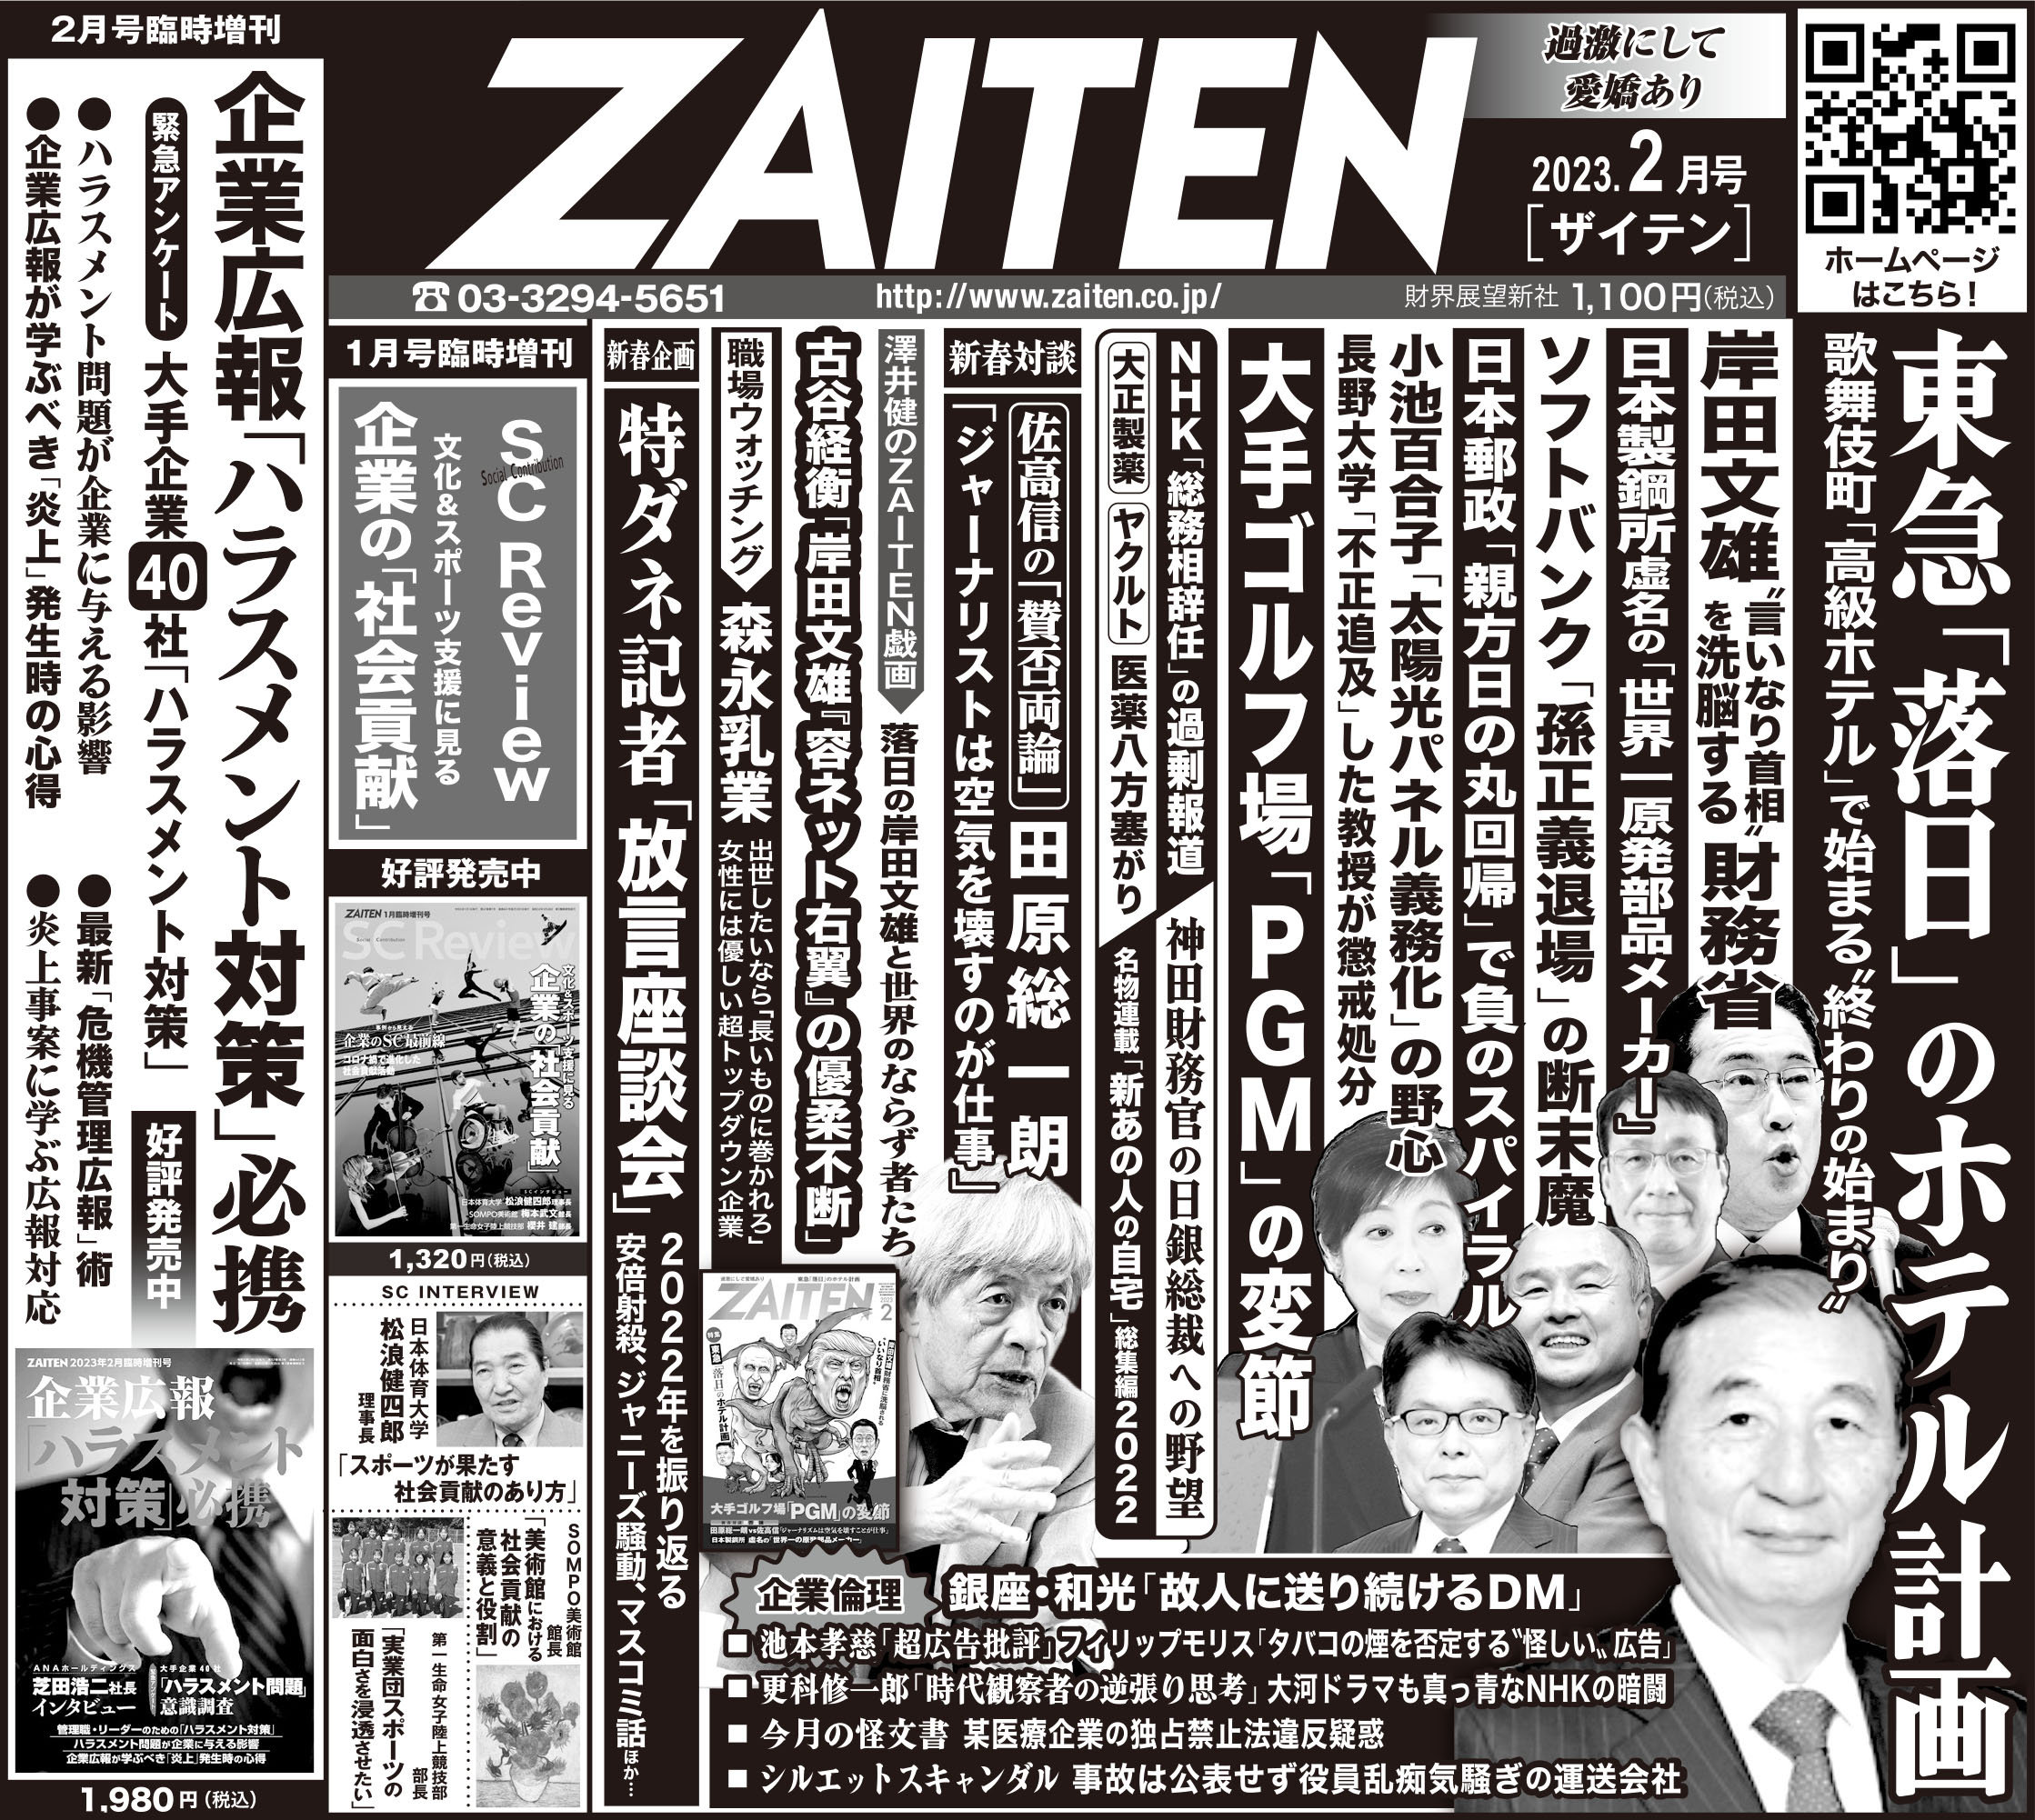 本日1月6日の日経新聞朝刊に「ZAITEN」2月号の告知が掲載されています 